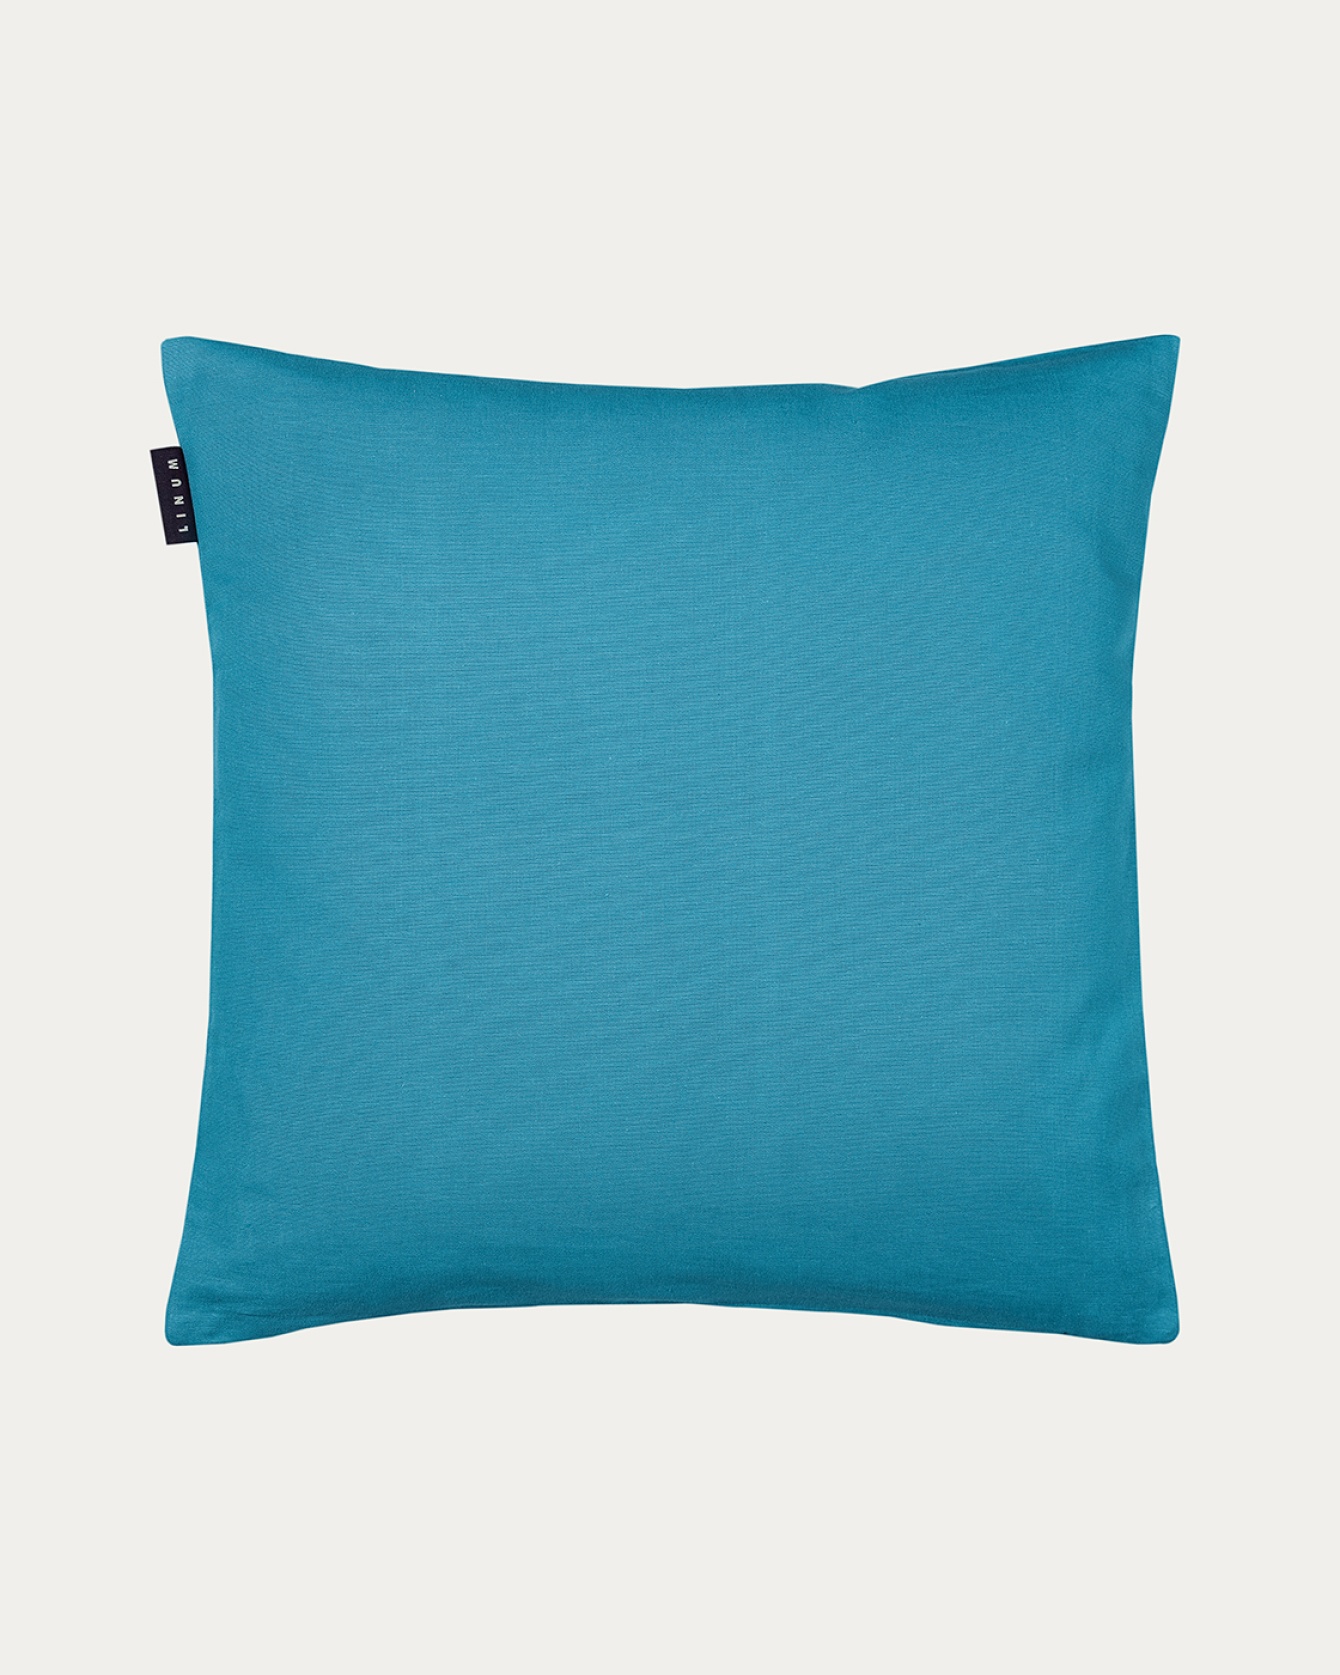 ANNABELL Cushion cover 50x50 cm Aqua turquoise